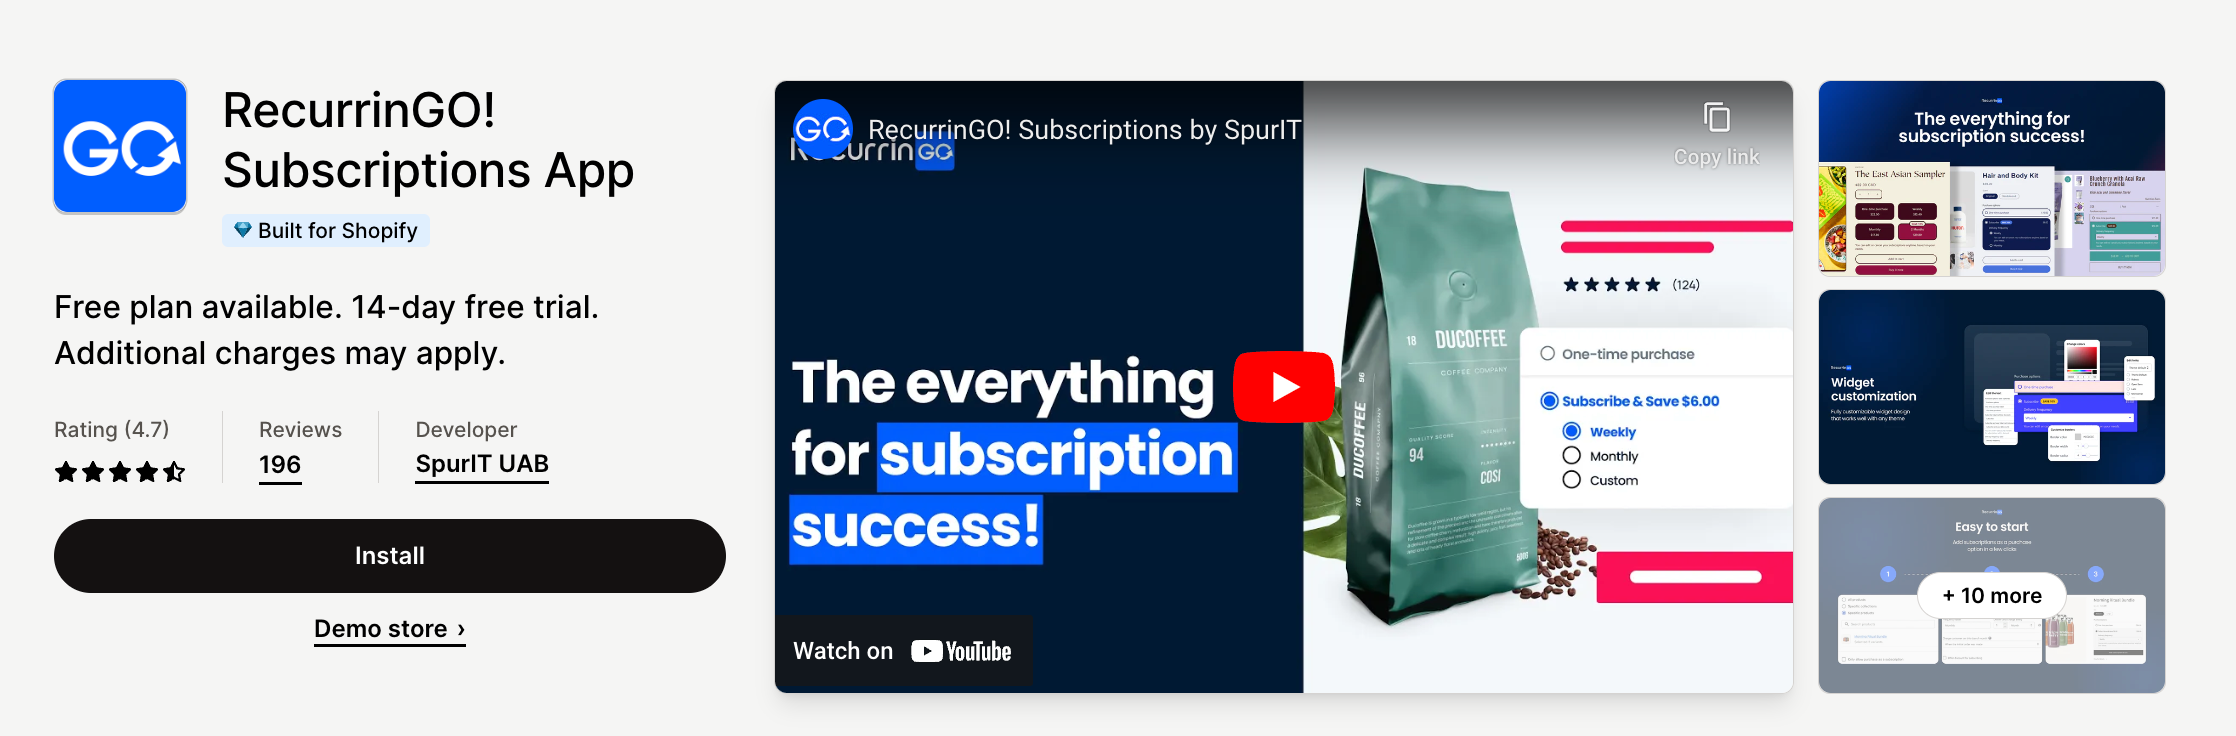 RecurrinGO! Subscriptions App